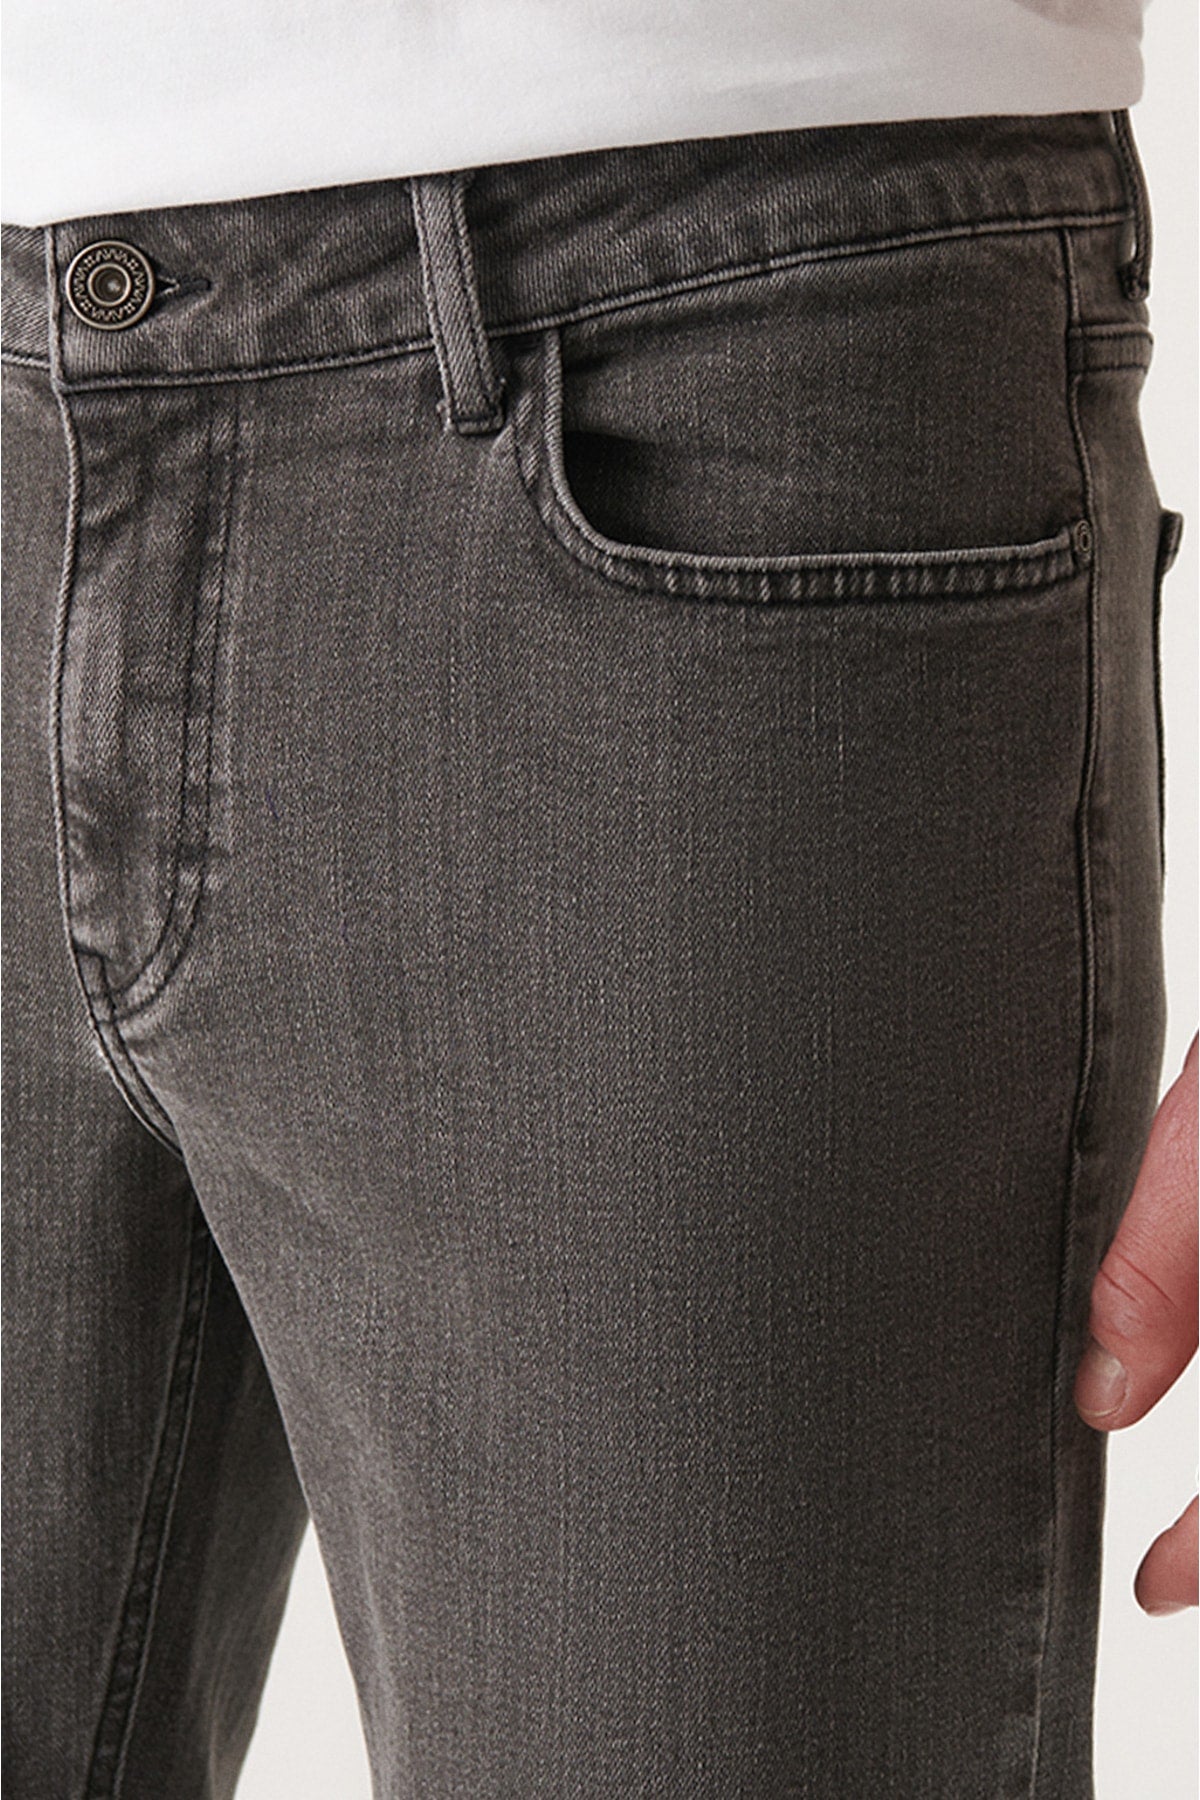 Men's Gray Obedness Washing Lylim Slim Fit Jean Pants E003539